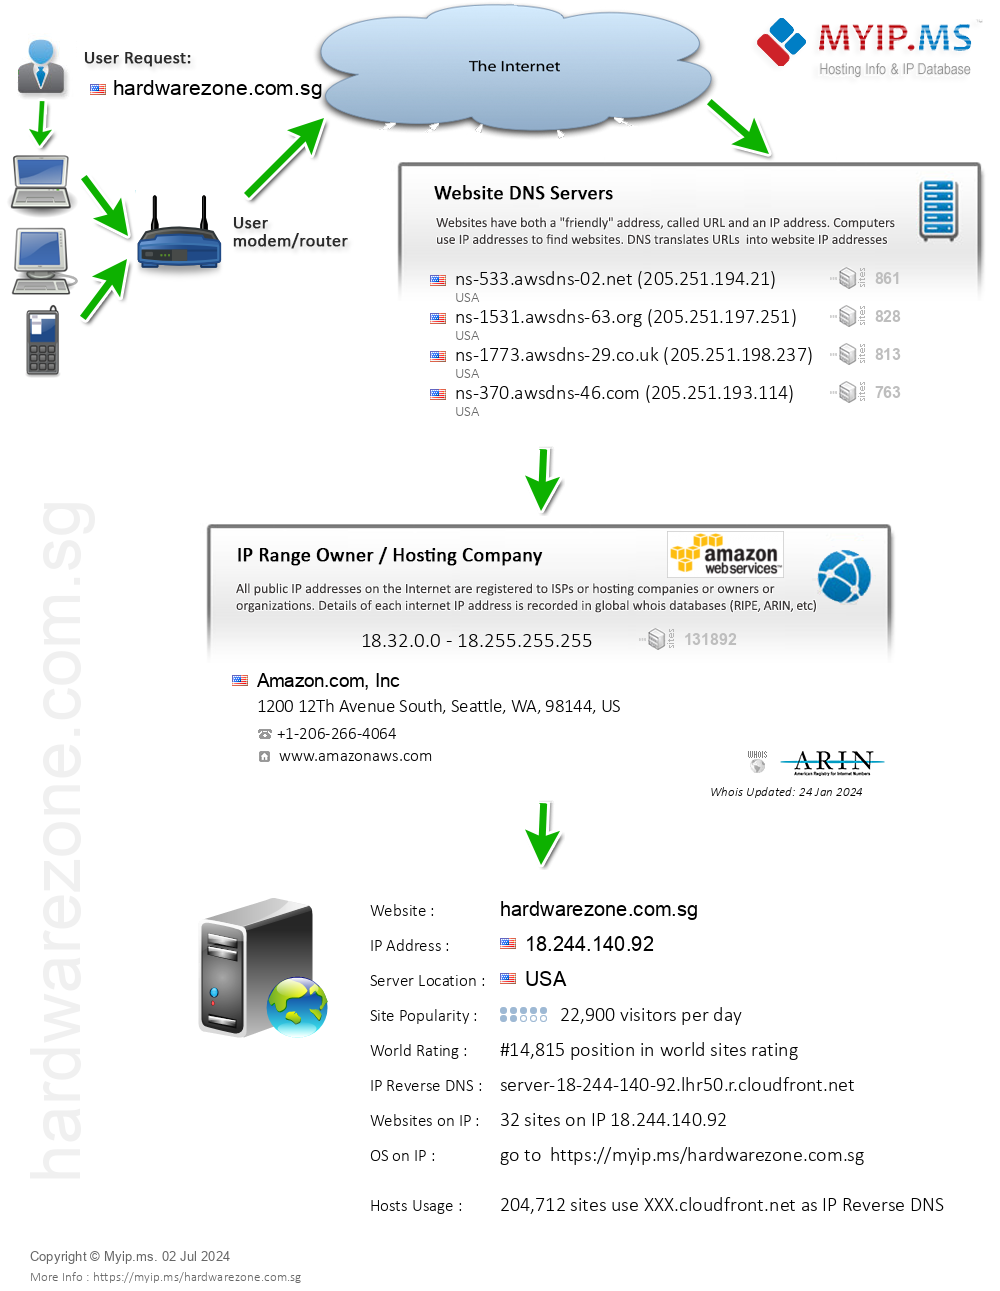 Hardwarezone.com.sg - Website Hosting Visual IP Diagram